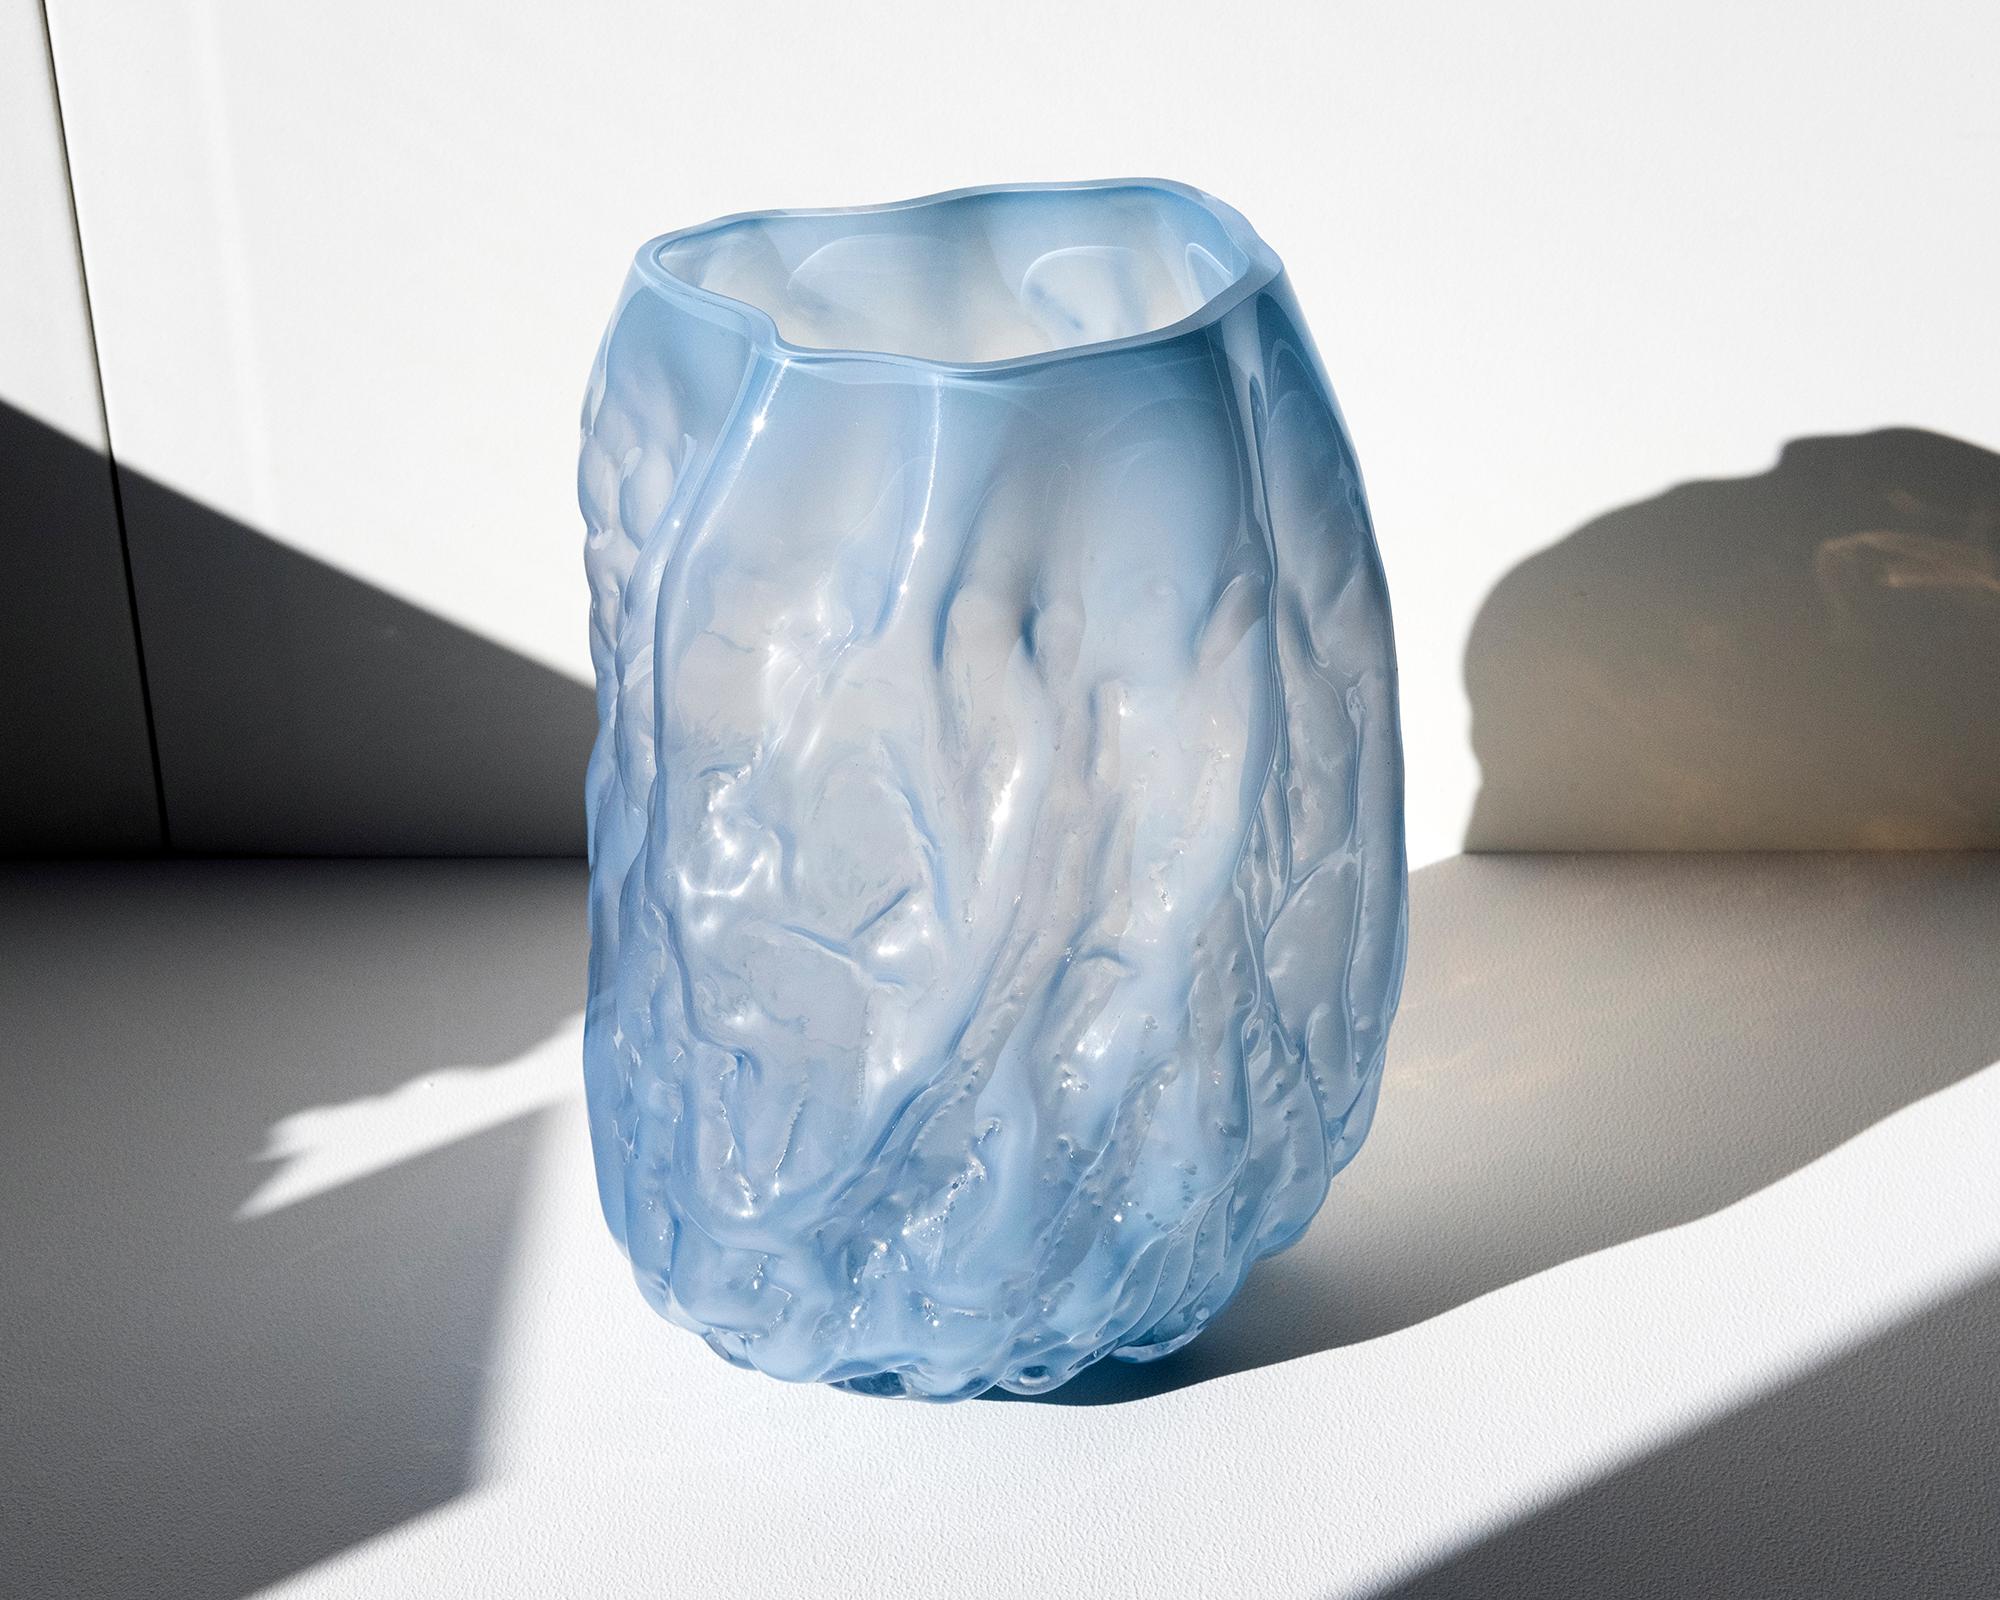 Einzigartiges Stück. Vase aus mundgeblasenem Glas, hergestellt in Formen aus weichem Ton, die von Hand geformt werden, bevor das Glas in die Form geblasen wird. Dieses Verfahren macht jedes Stück einzigartig und verleiht ihm eine faltige Oberfläche.